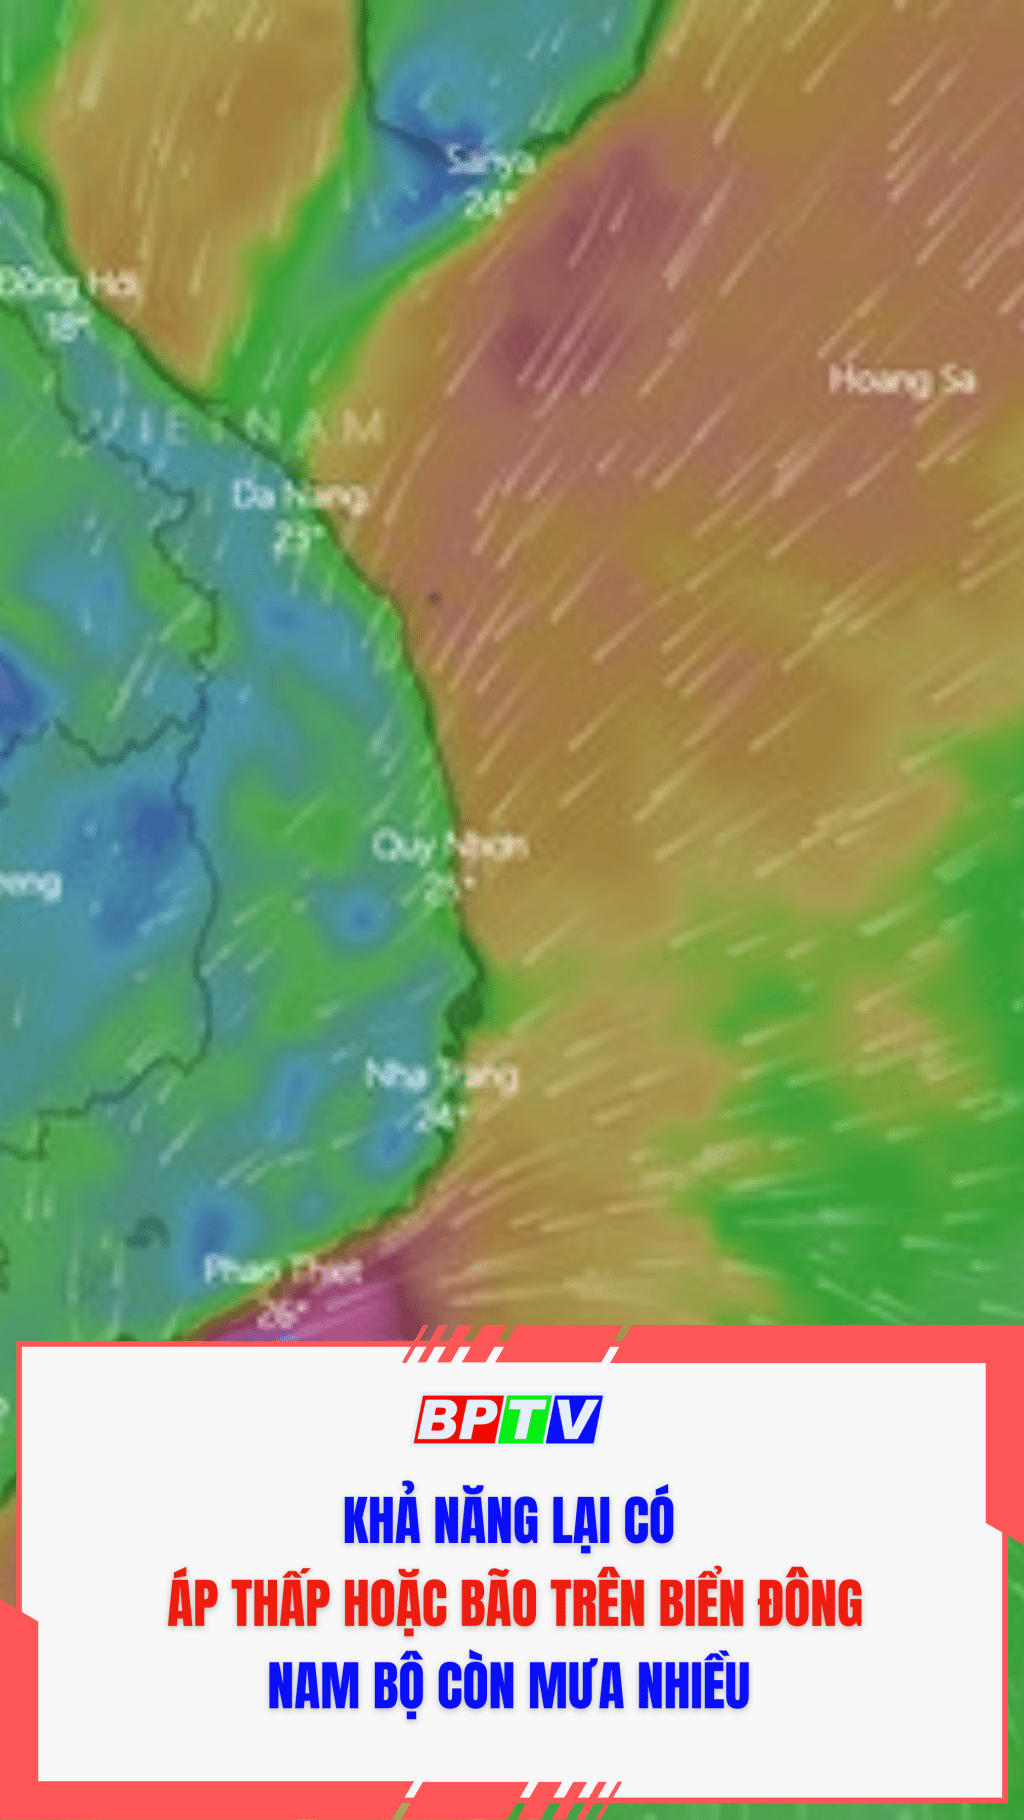 Khả năng lại có áp thấp hoặc bão trên biển Đông, Nam Bộ còn mưa nhiều  #shorts